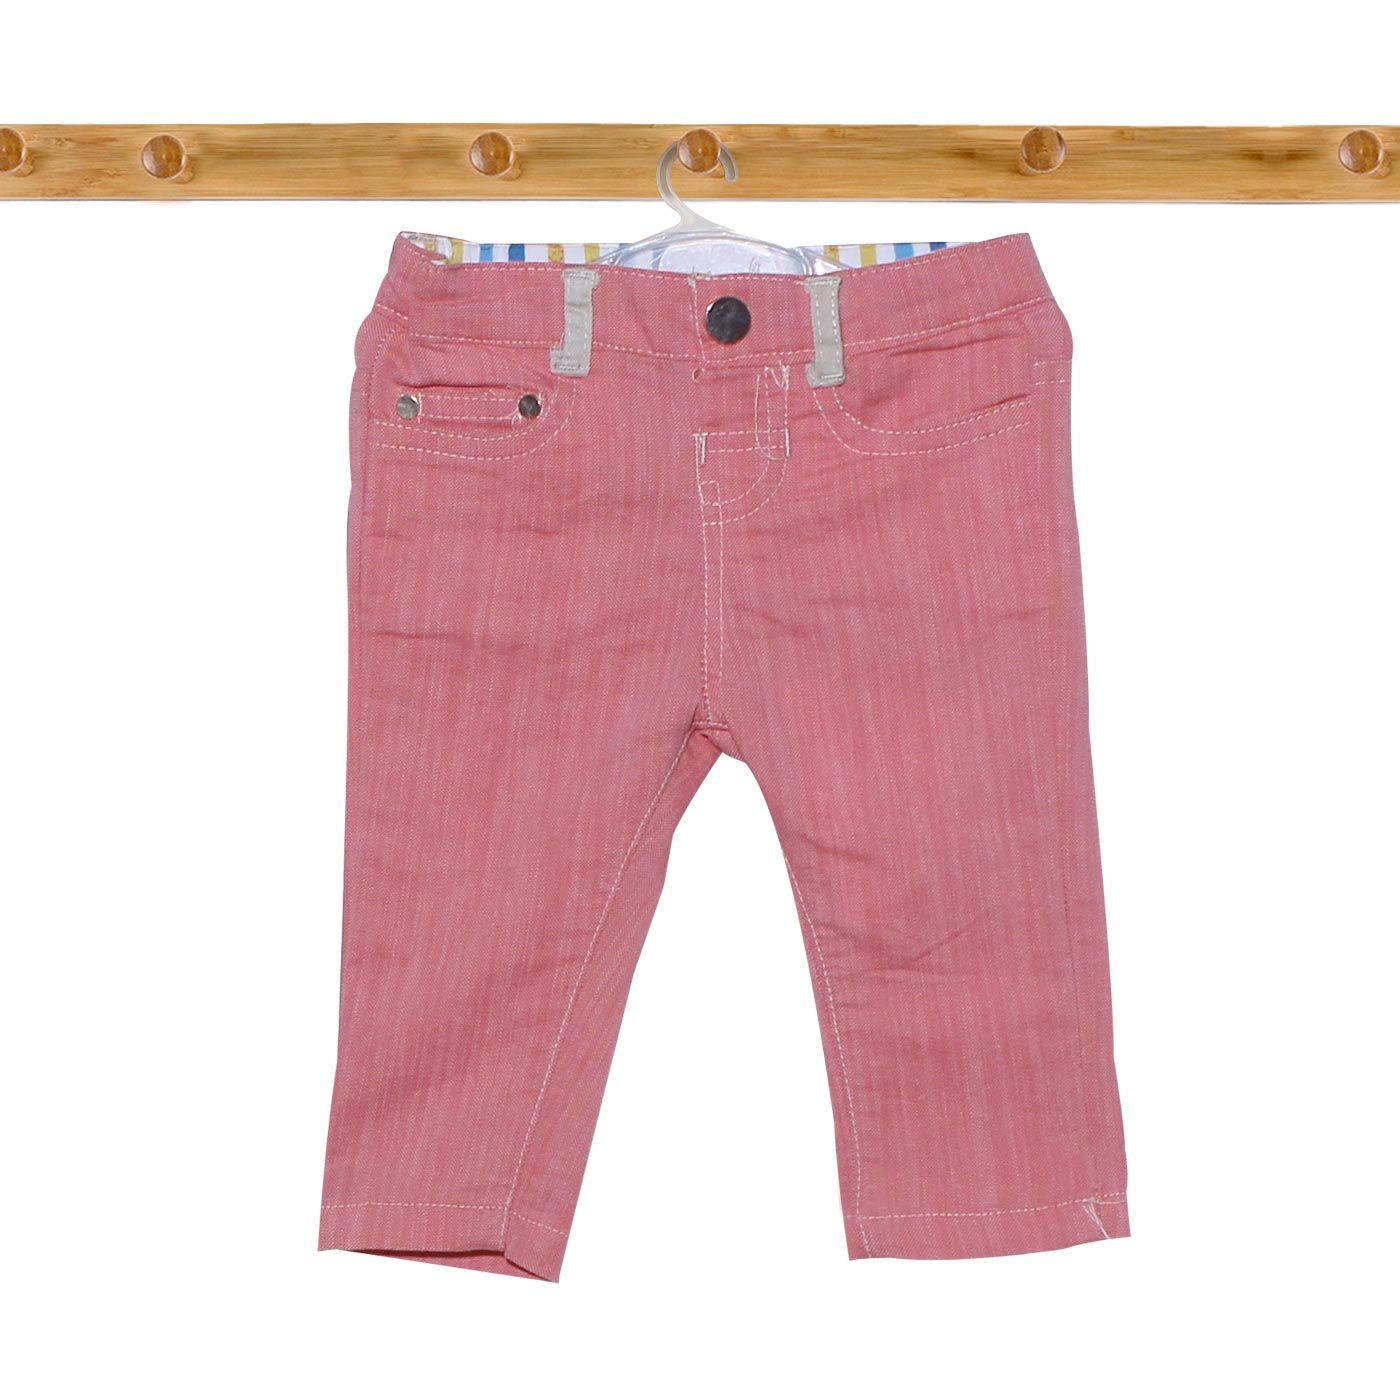 Kiddiewear Long Pant Pink-0/3M - 1